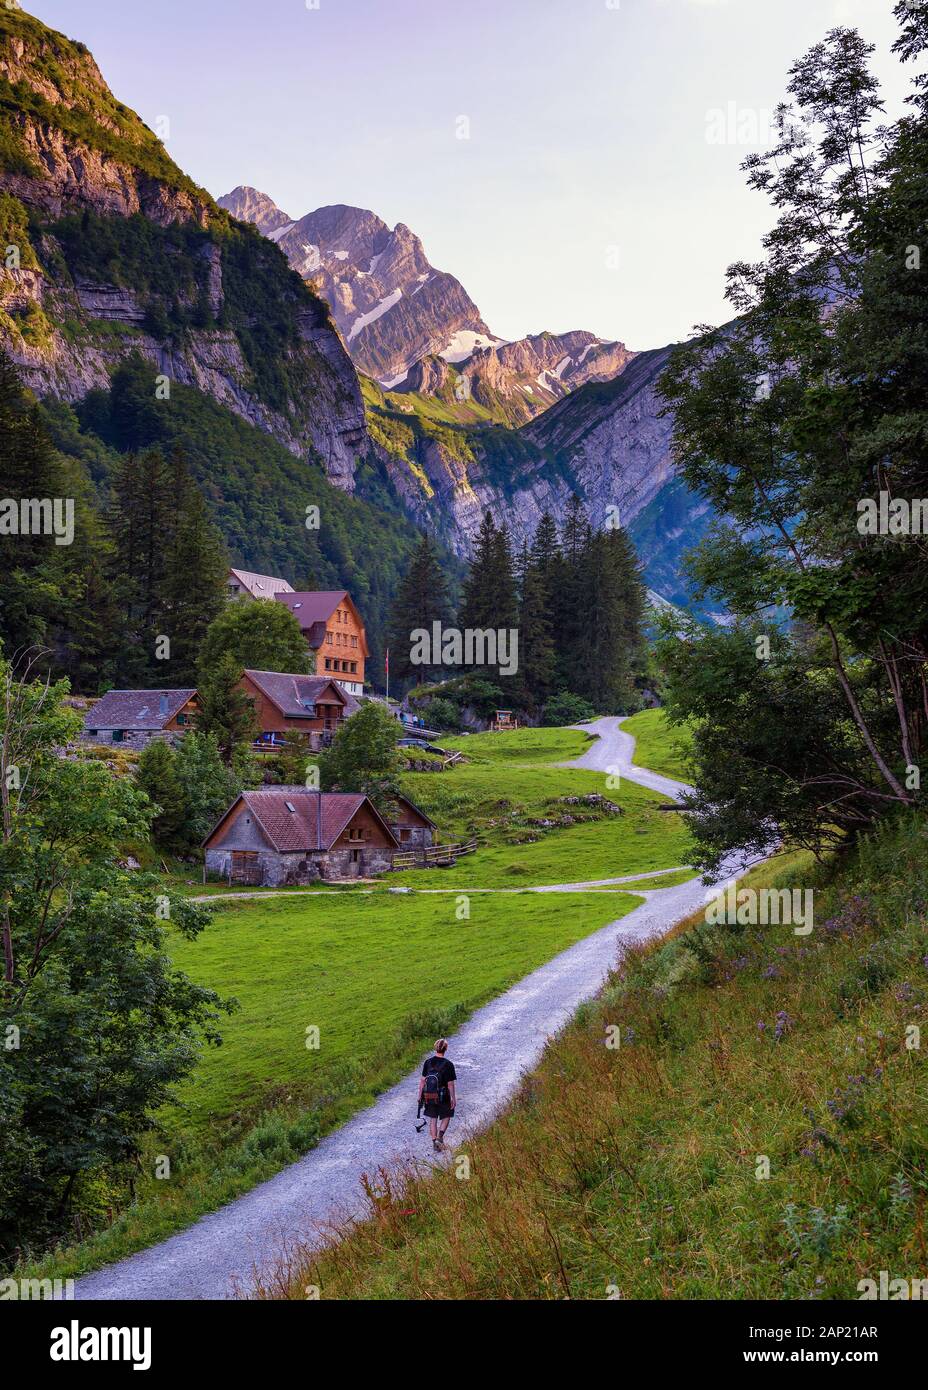 Les touristes descendent sur le sentier menant au lac de Seealpsee dans les Alpes suisses Banque D'Images